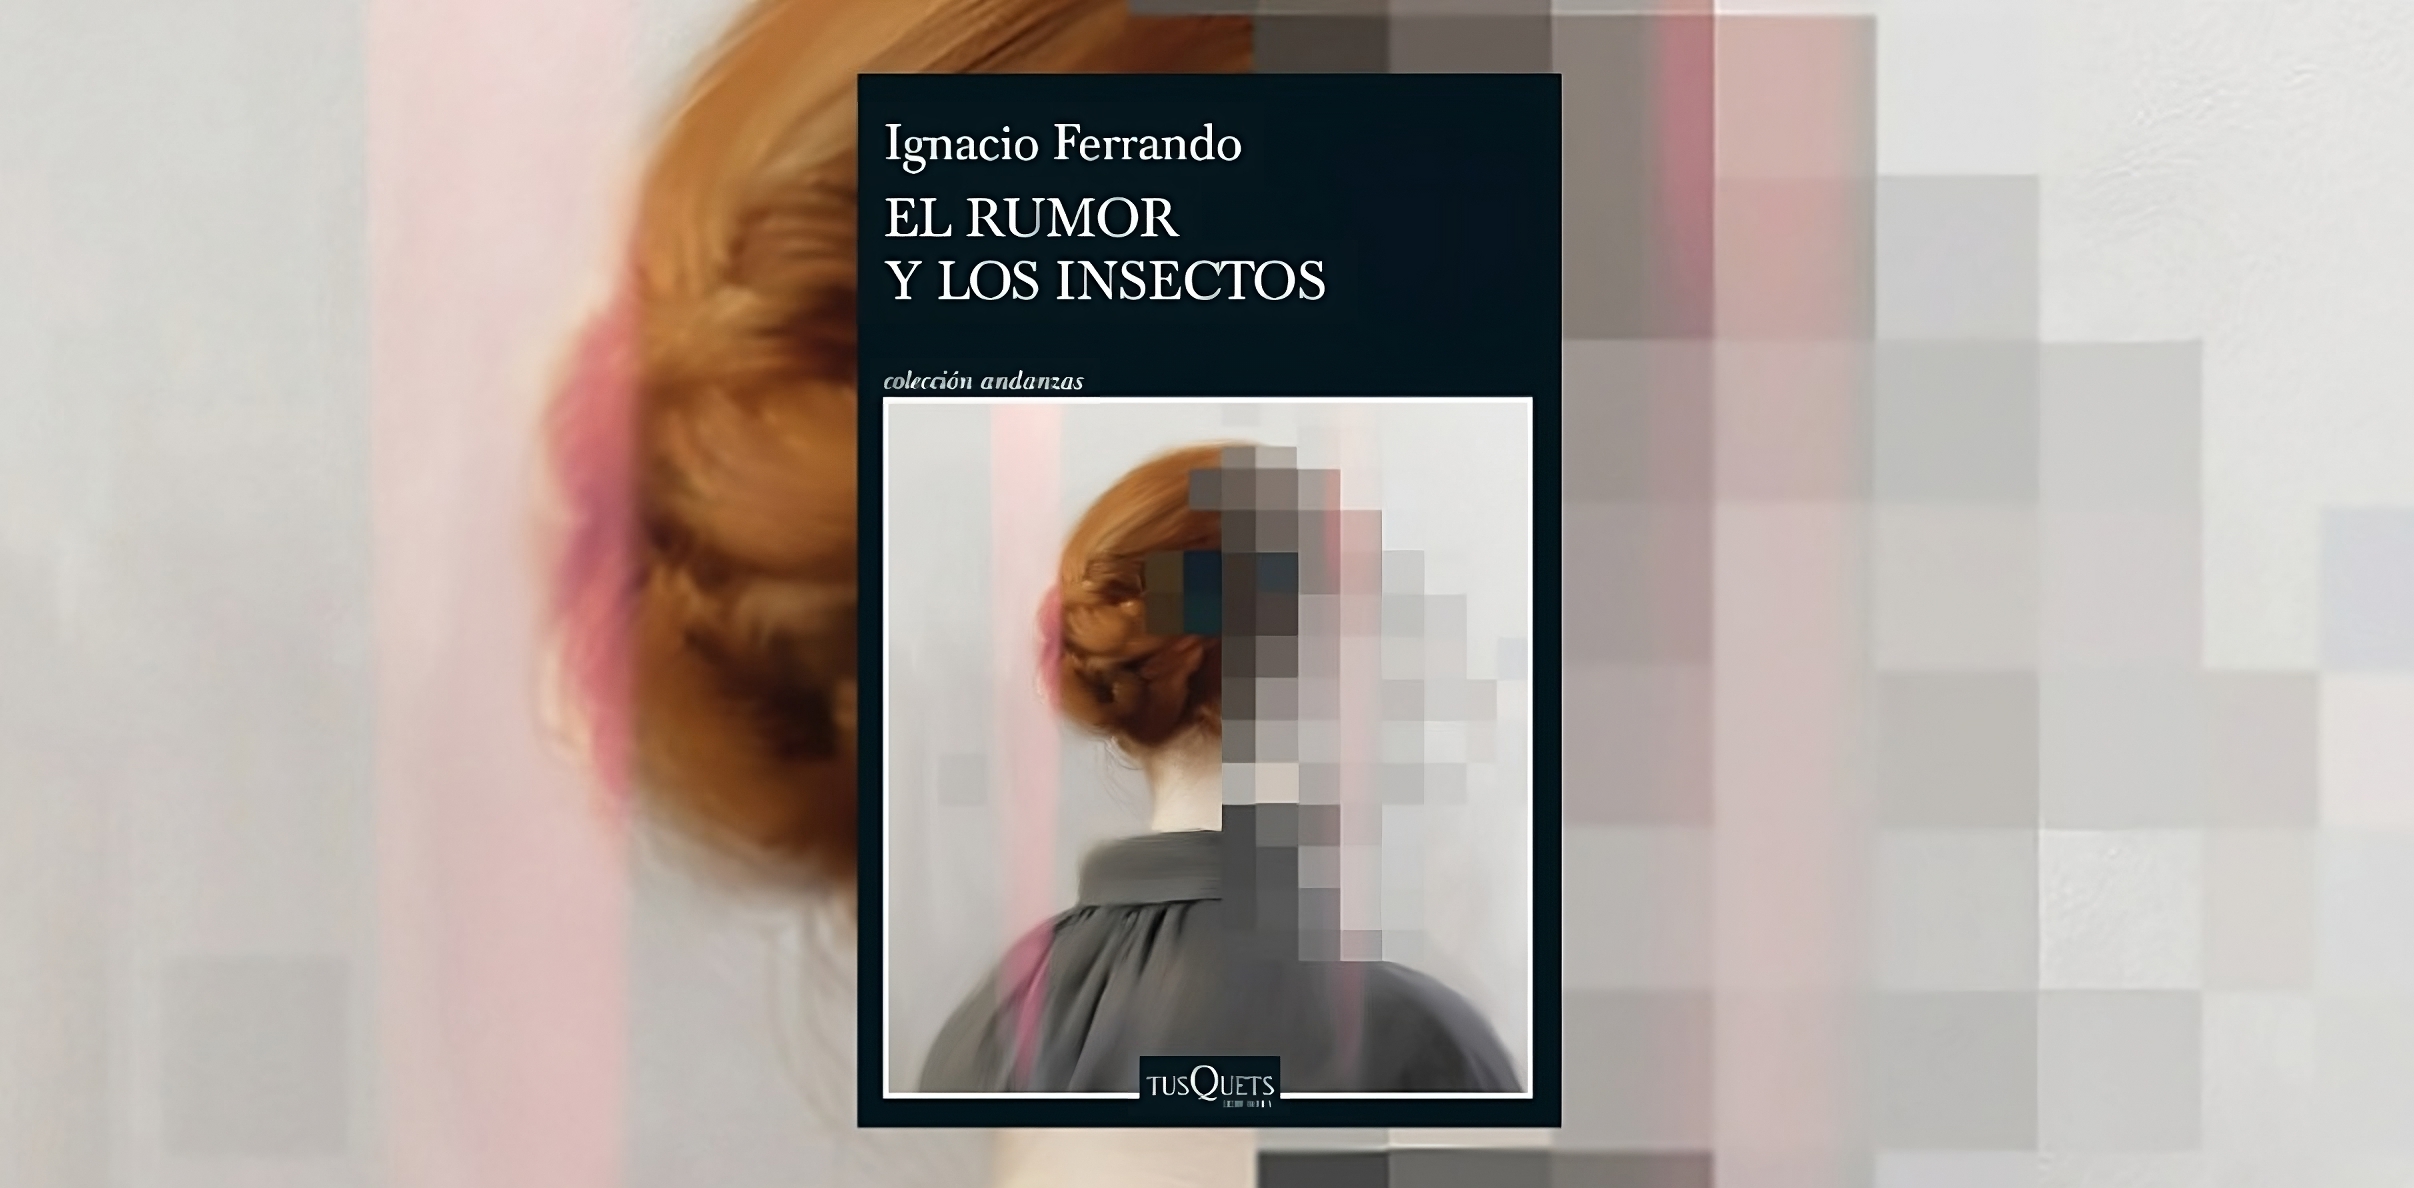 Portada del libro "El rumor y los insectos", de Ignacio Fernando. (Planeta de Libros).